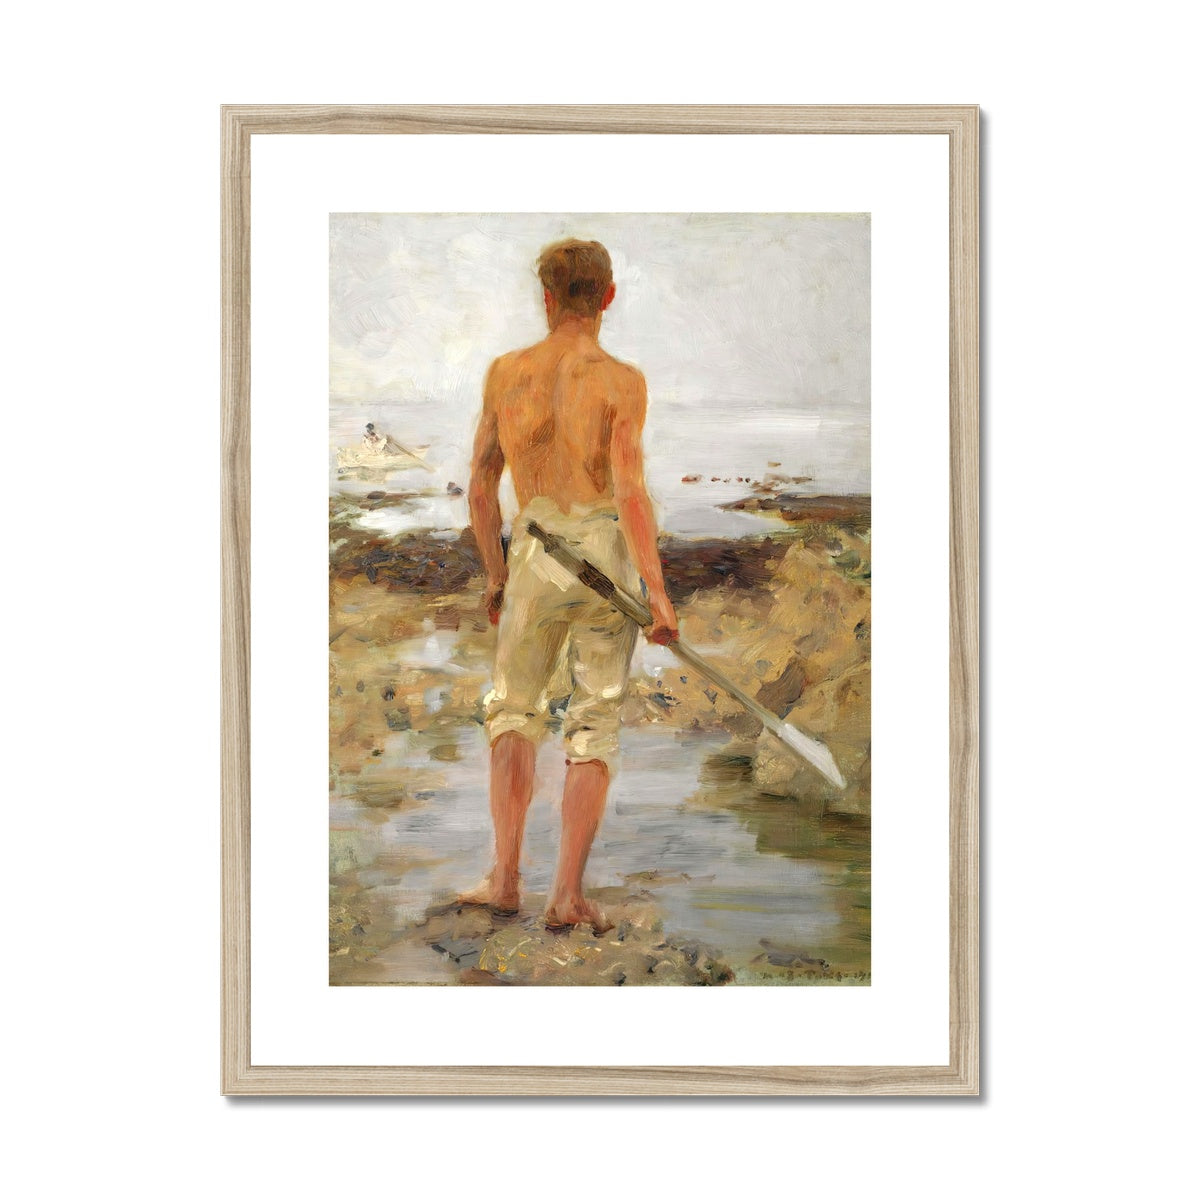 A Boy with an Oar by Henry Scott Tuke. Framed Open Edition Fine Art Print. Historic Art